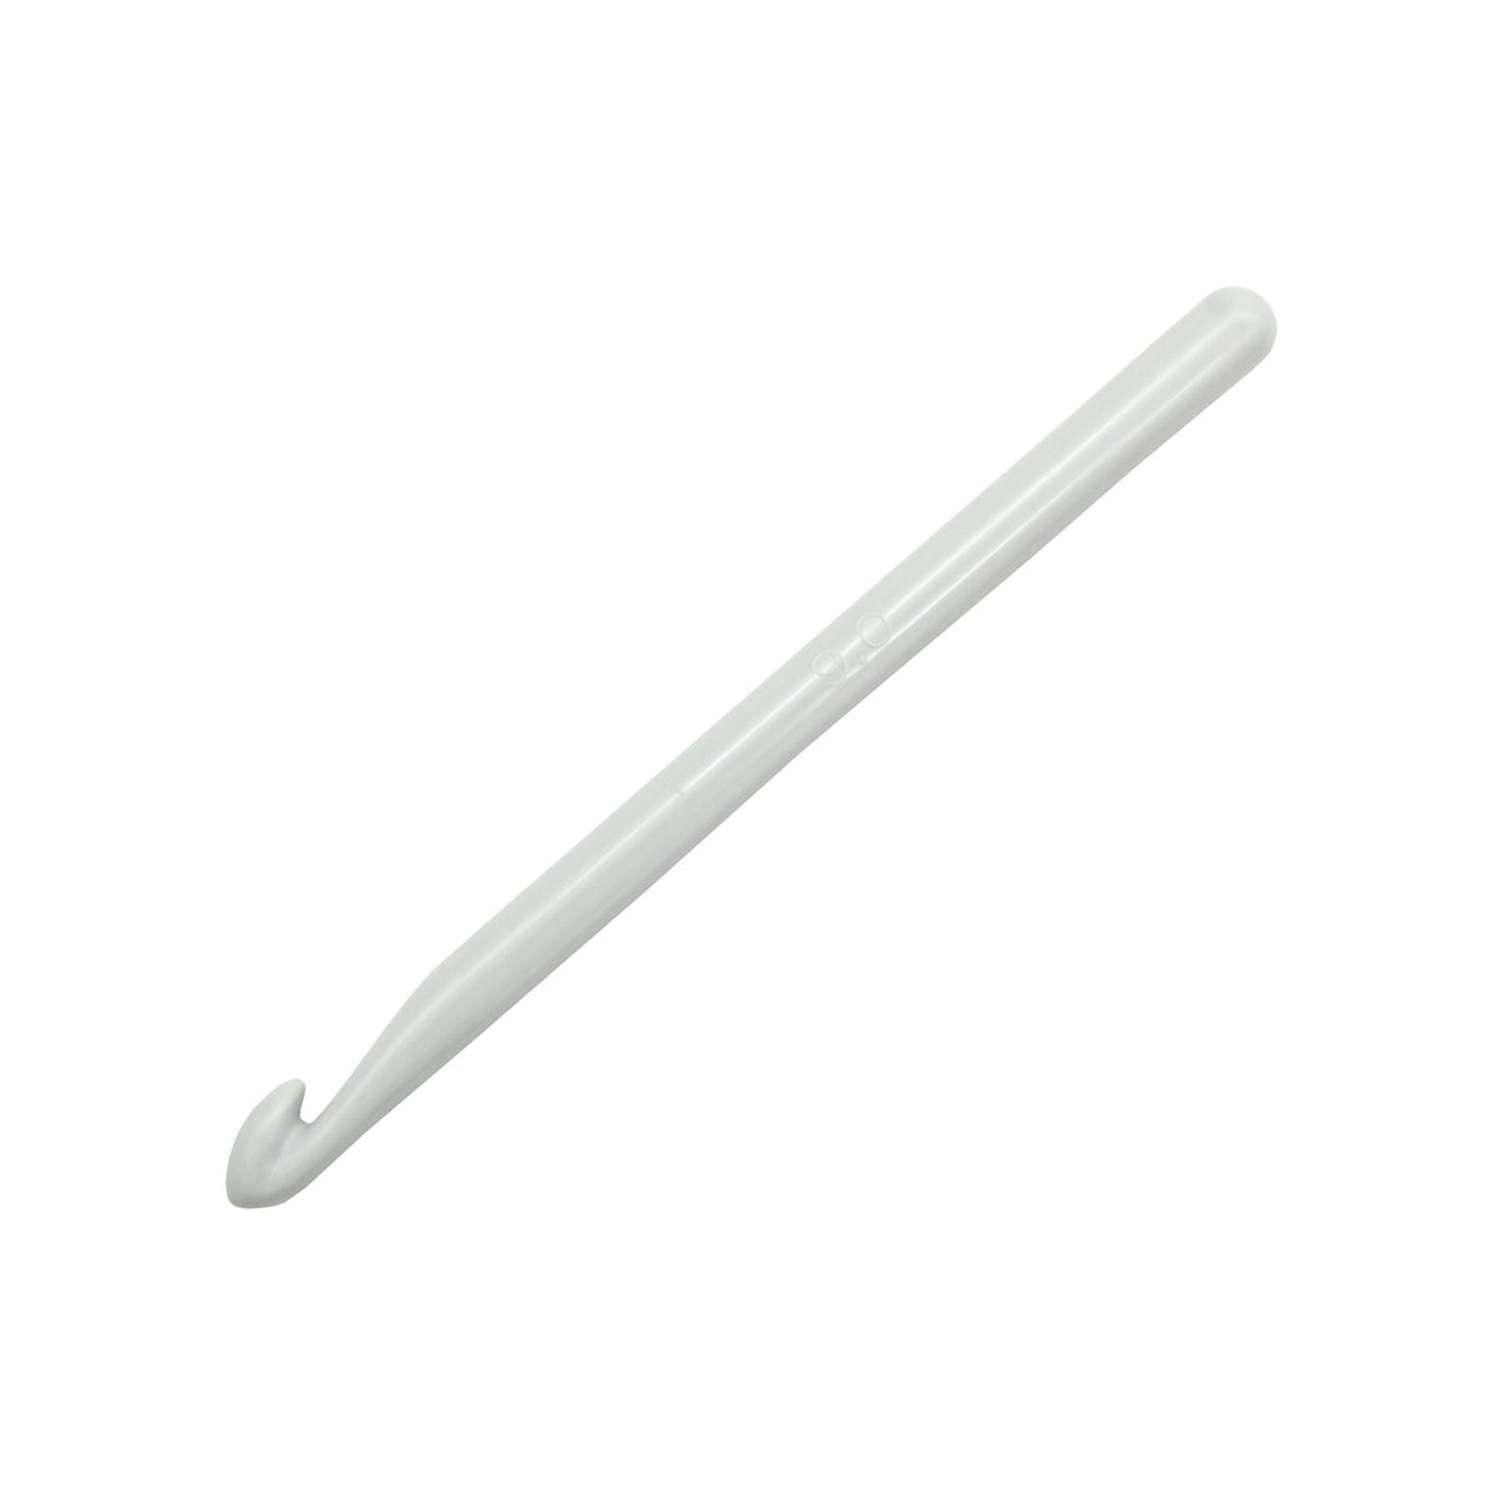 Крючок для вязания Prym пластиковый гладкий легкий для натуральной шерсти акрила 9 мм 14 см 218502 - фото 6